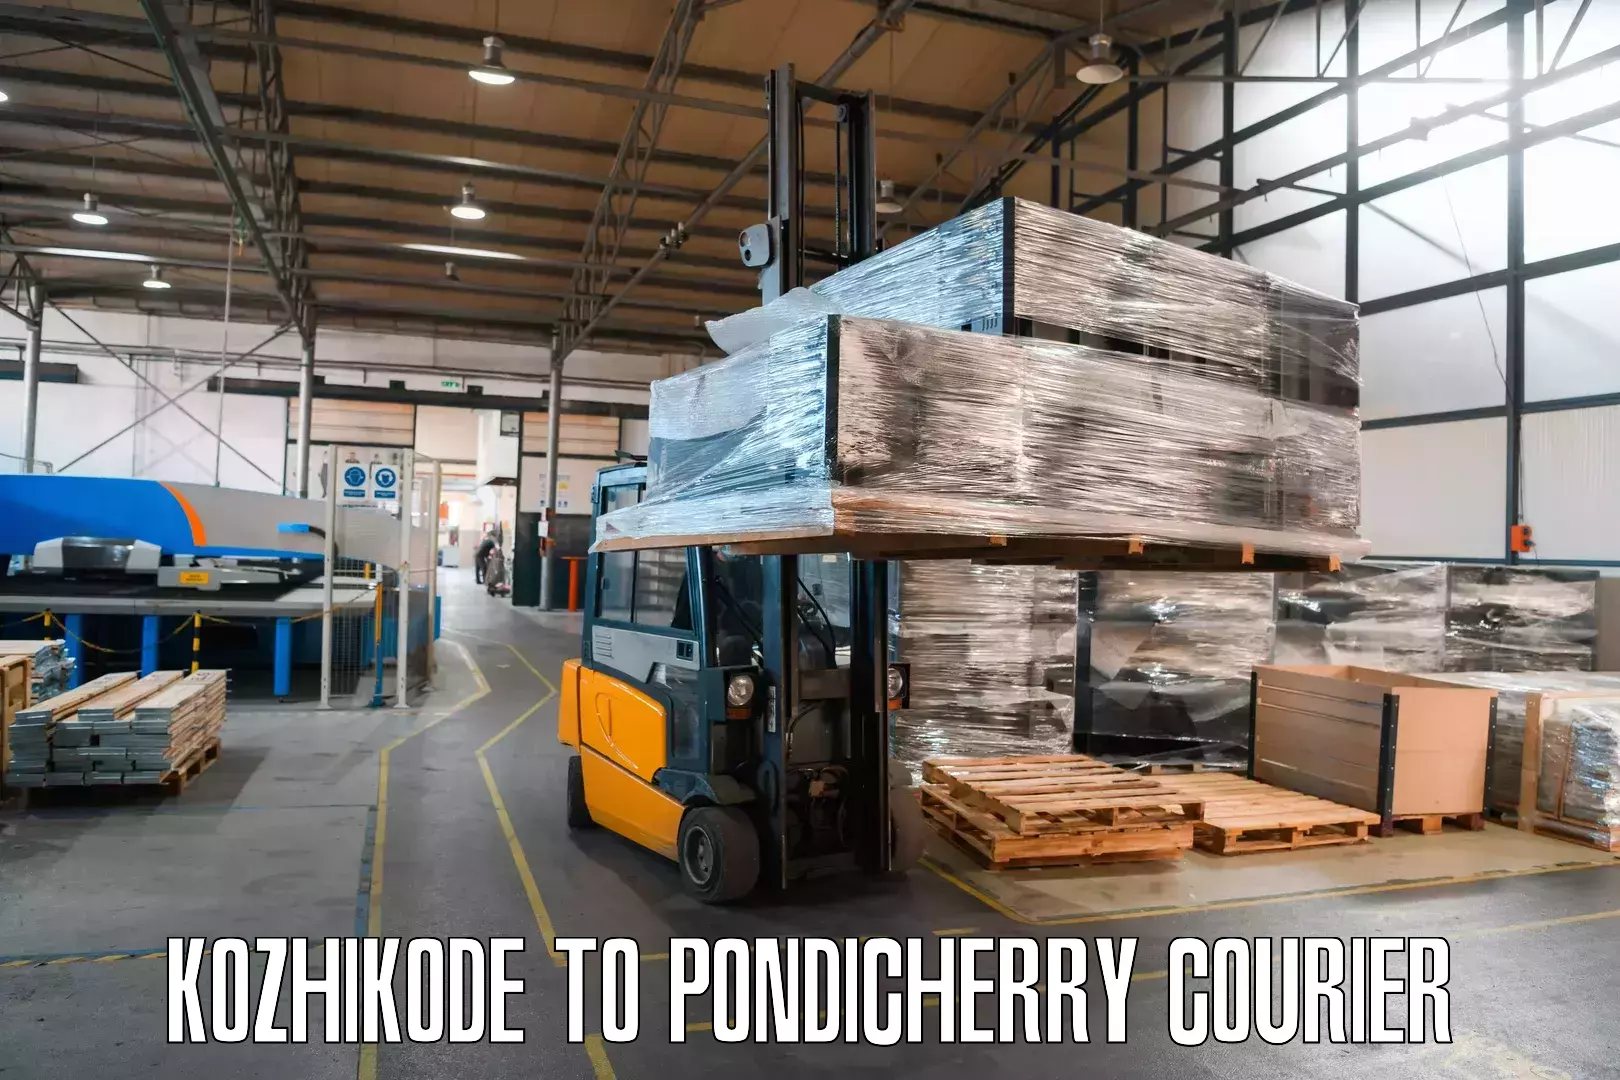 Pharmaceutical courier Kozhikode to Pondicherry